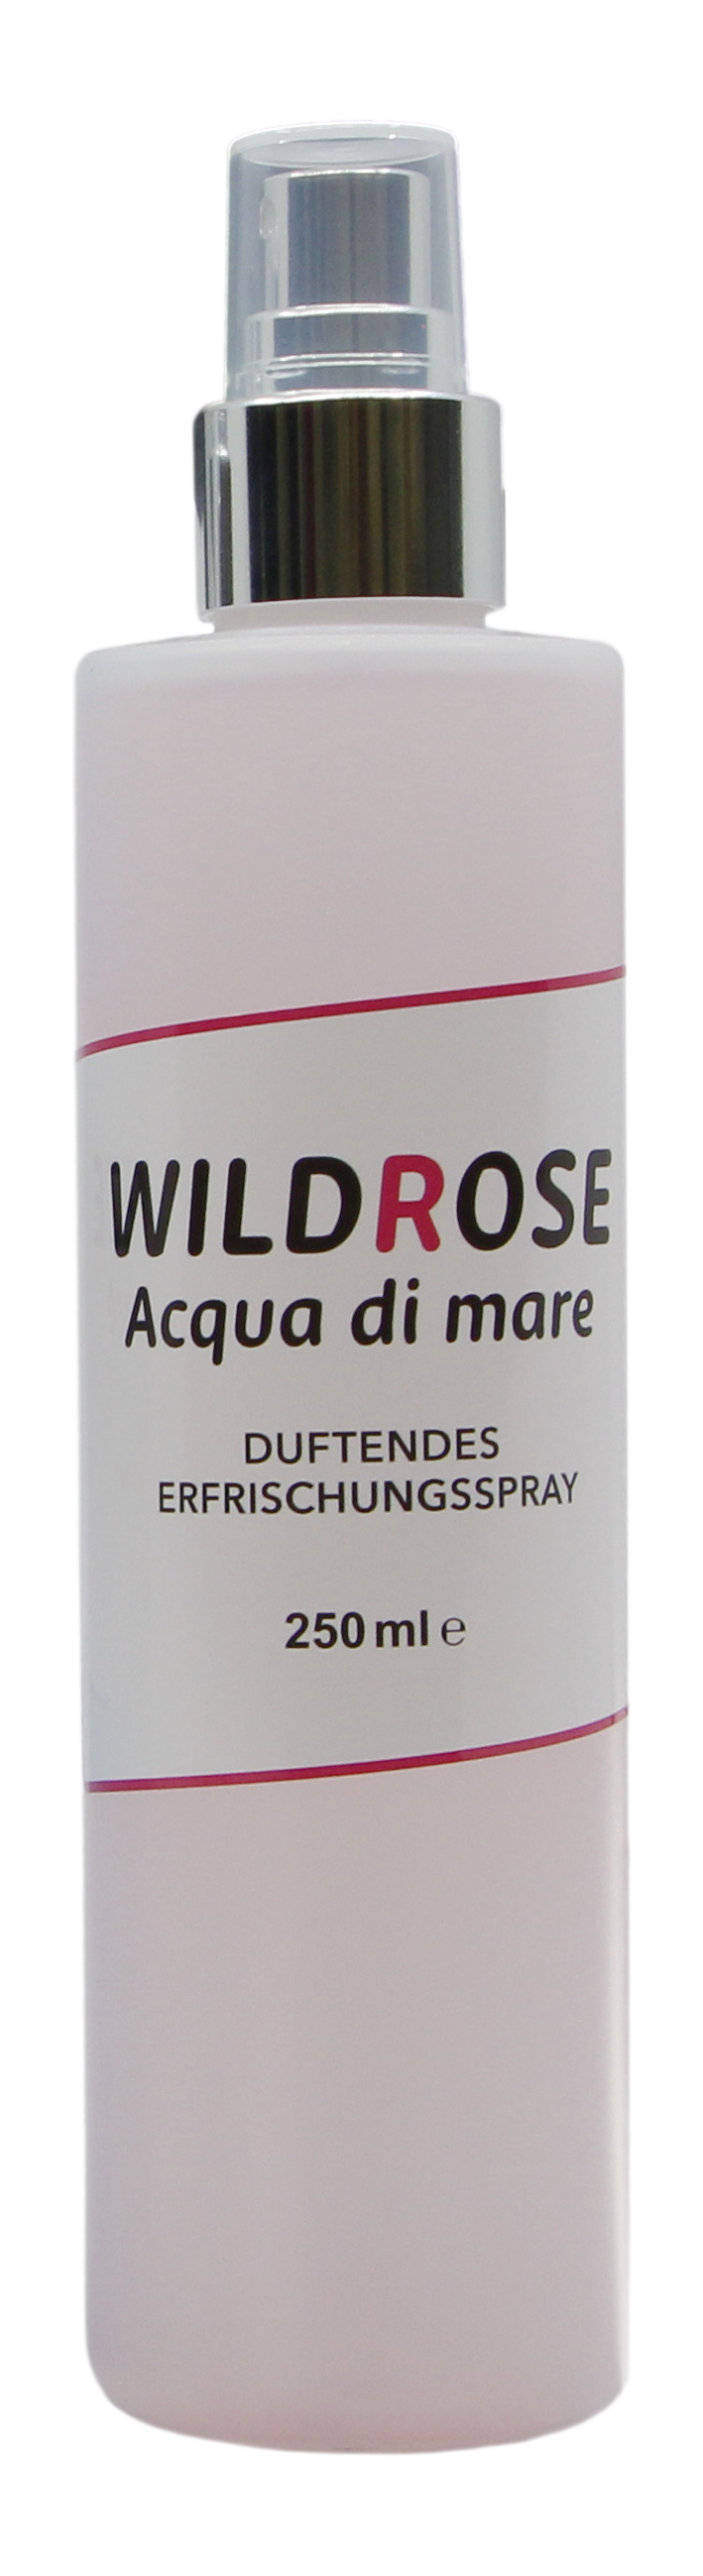 Erfrischungsspray Wild Rose